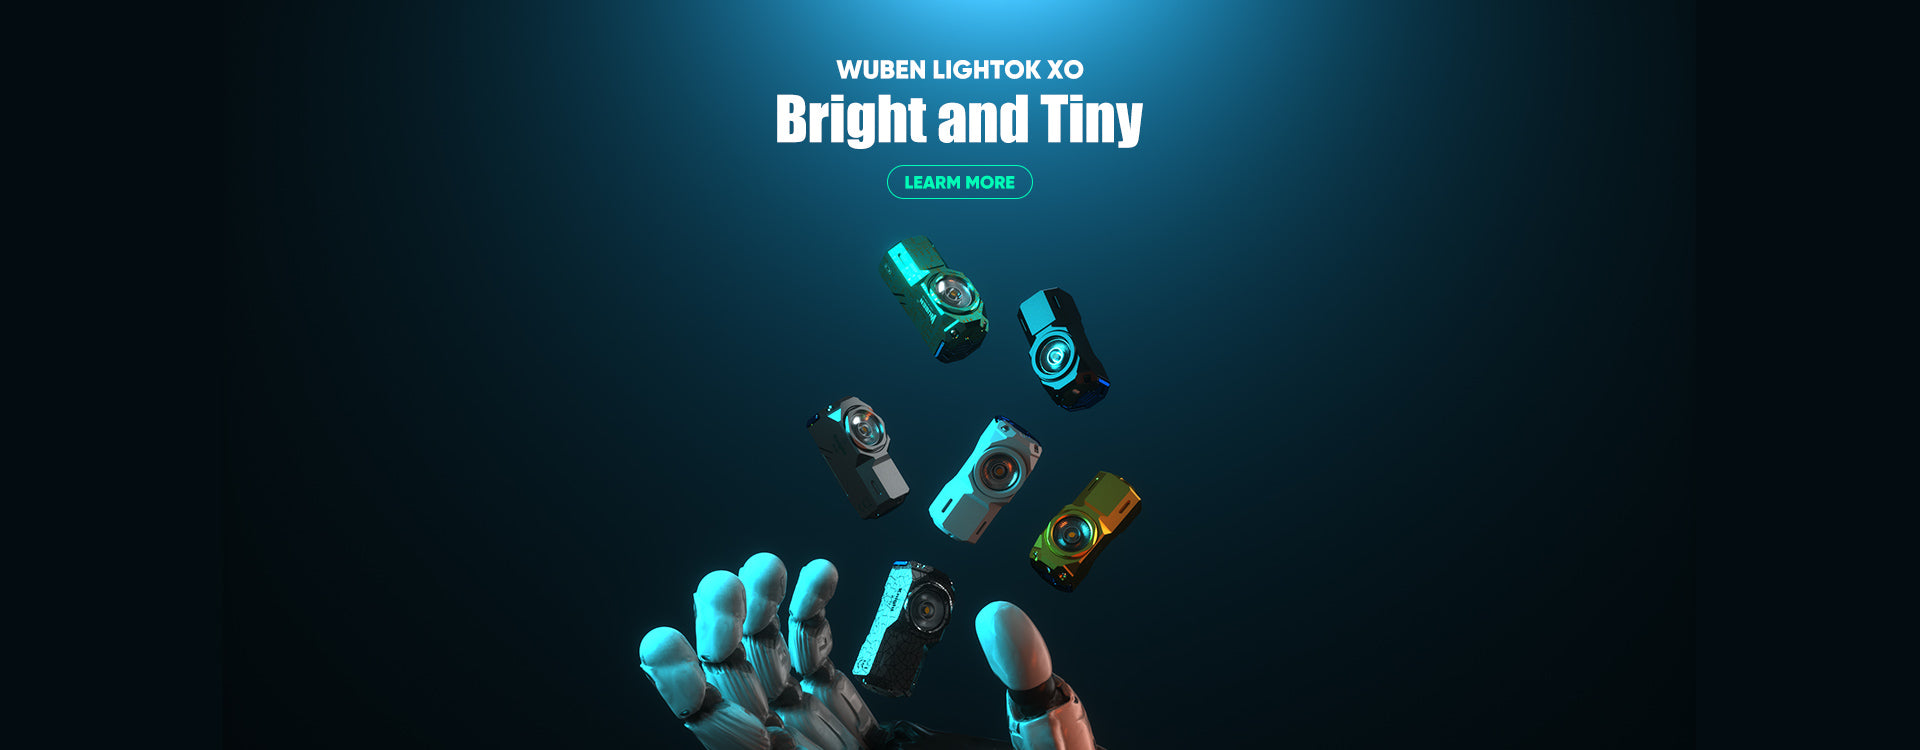 wuben lightok X0 easy carry light